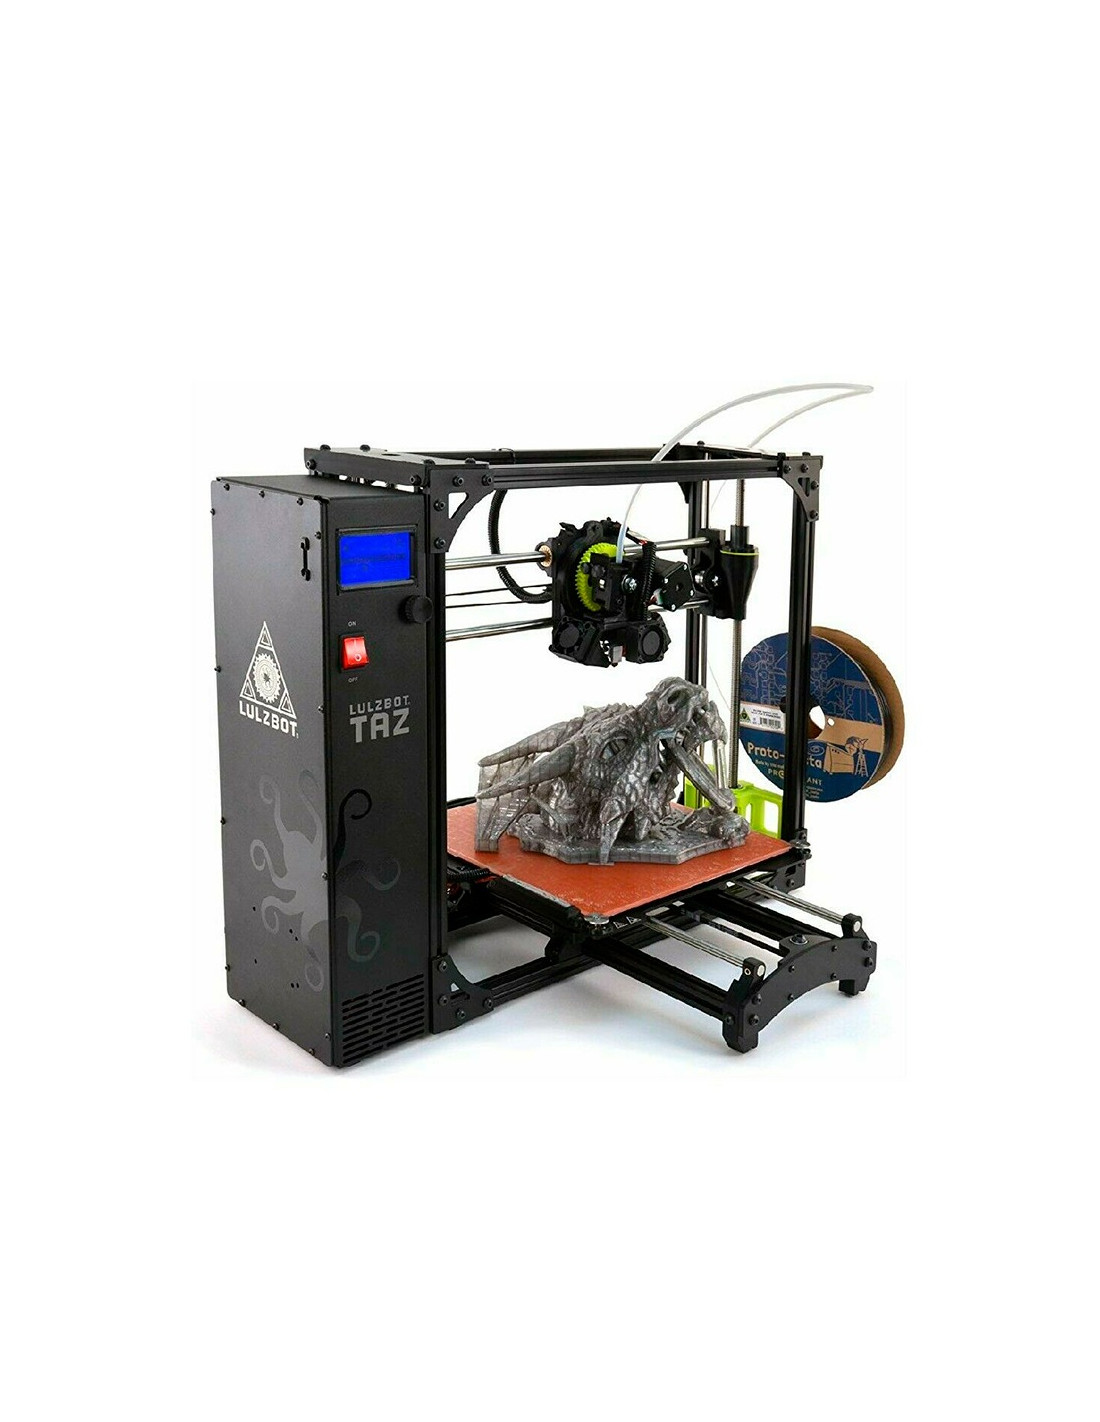 Impresora 3D LulzBot TAZ 6